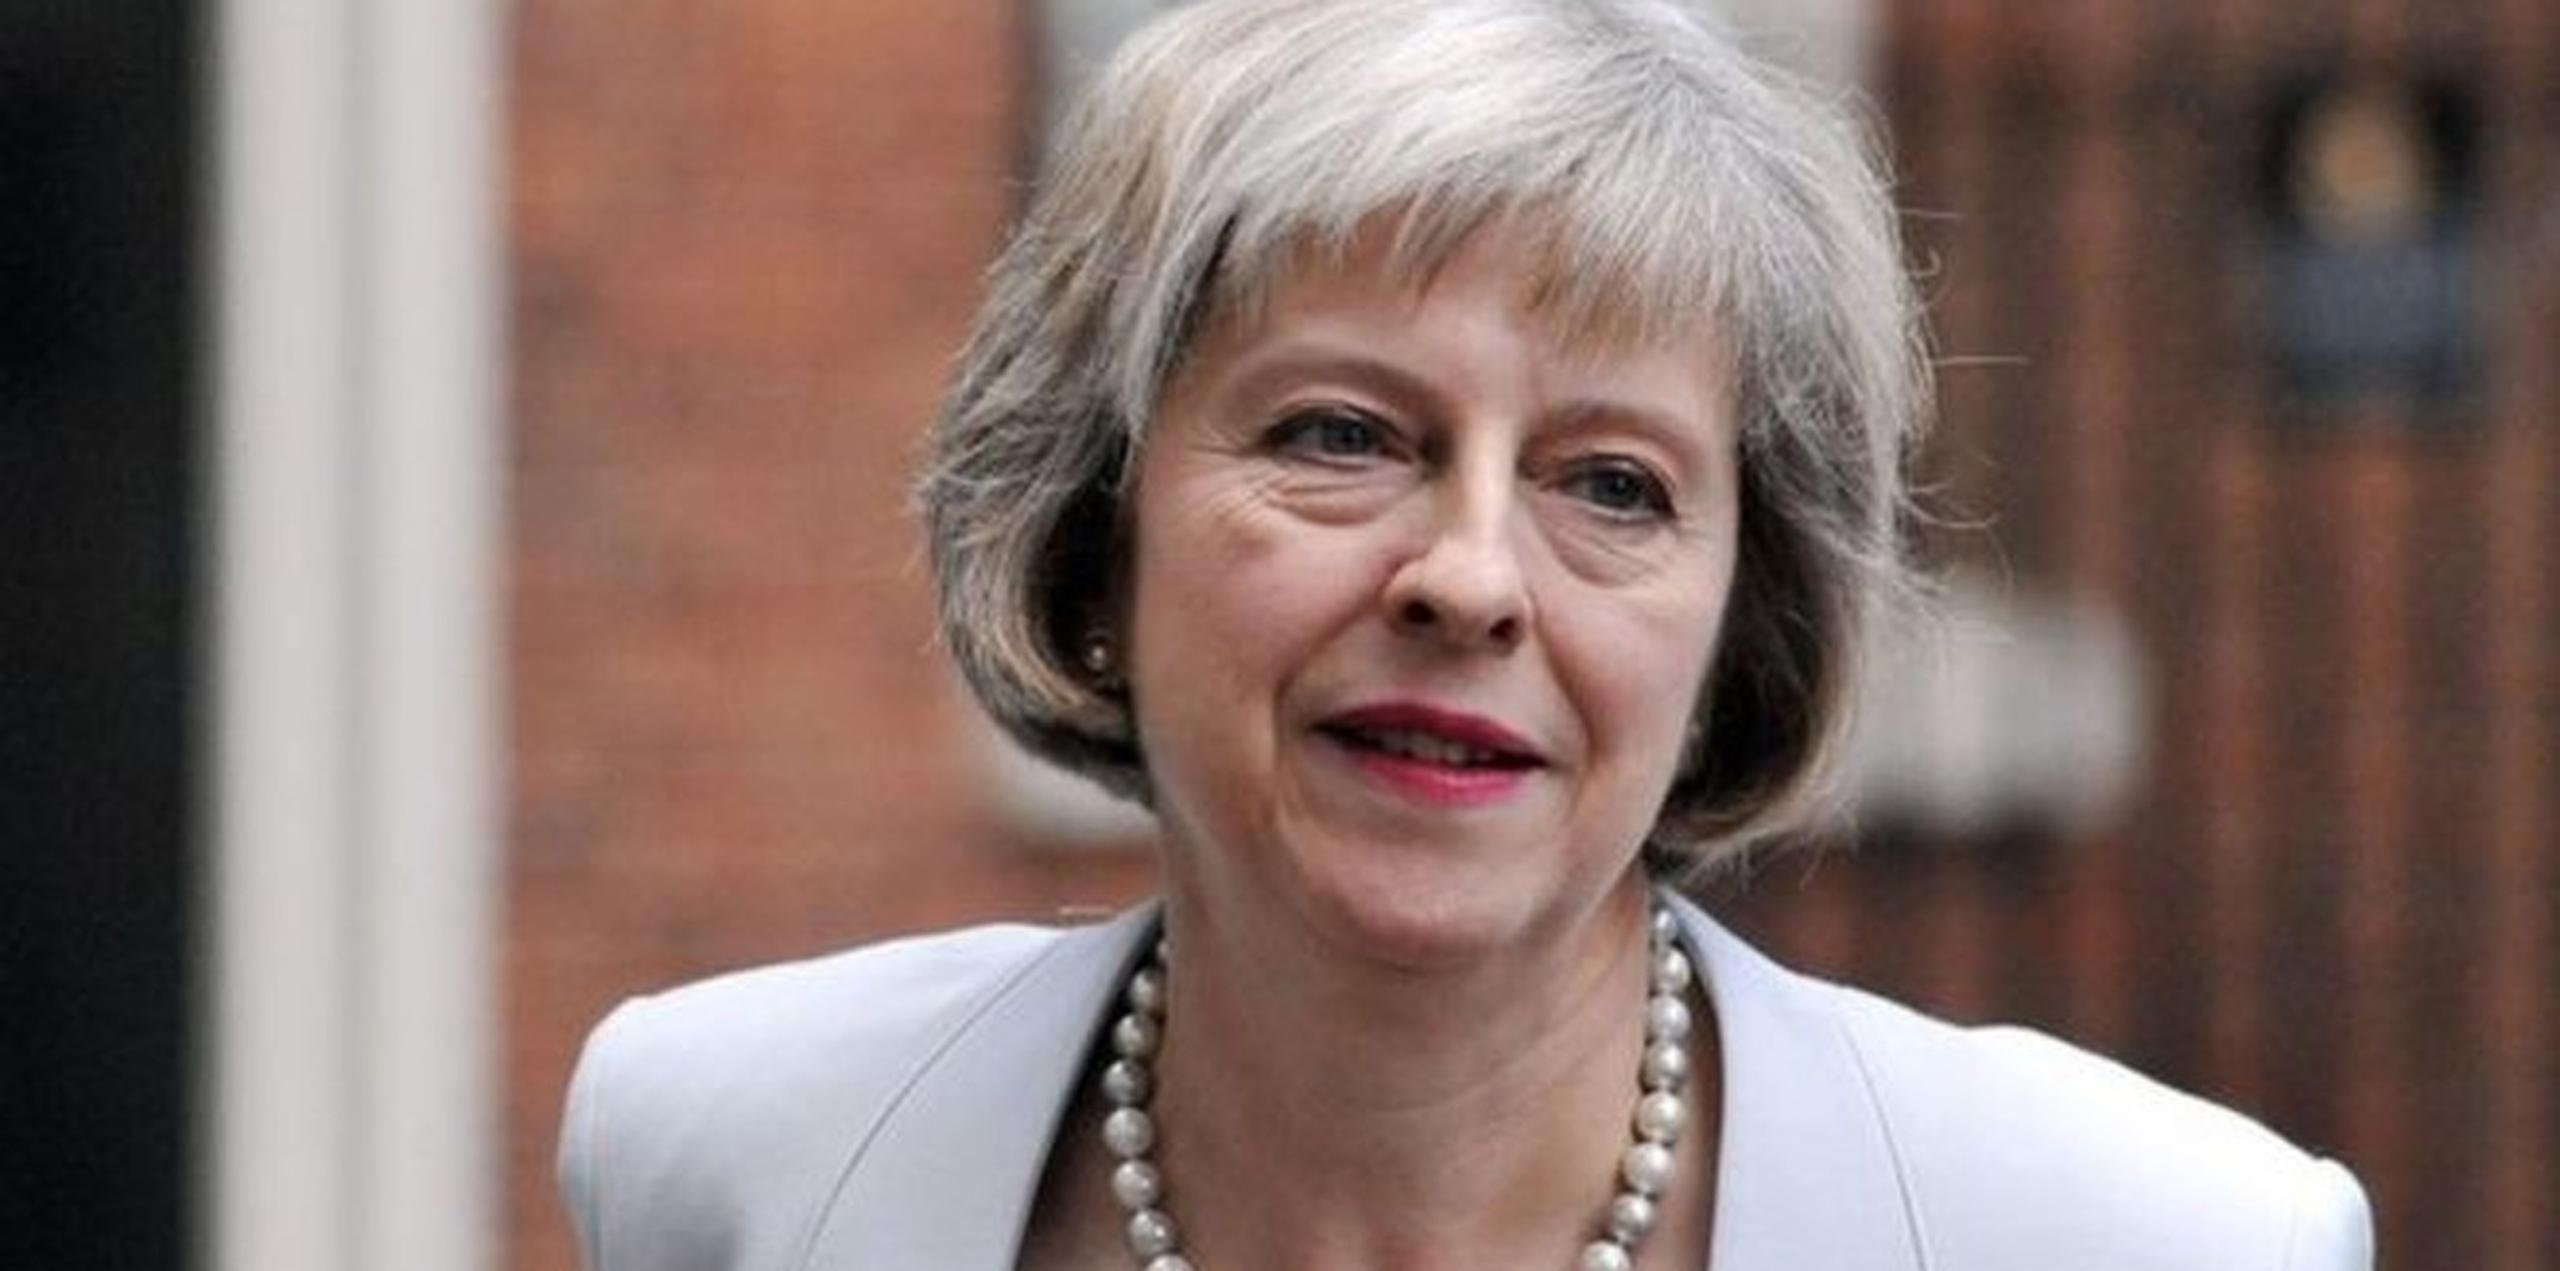 El reporte, preparado por un asesor de la oficina, señala que divisiones dentro del equipo de la primera ministra, Theresa May, demoraron el desarrollo de una estrategia de negociación y que podrían pasar otros seis meses hasta formular un plan. (AP)